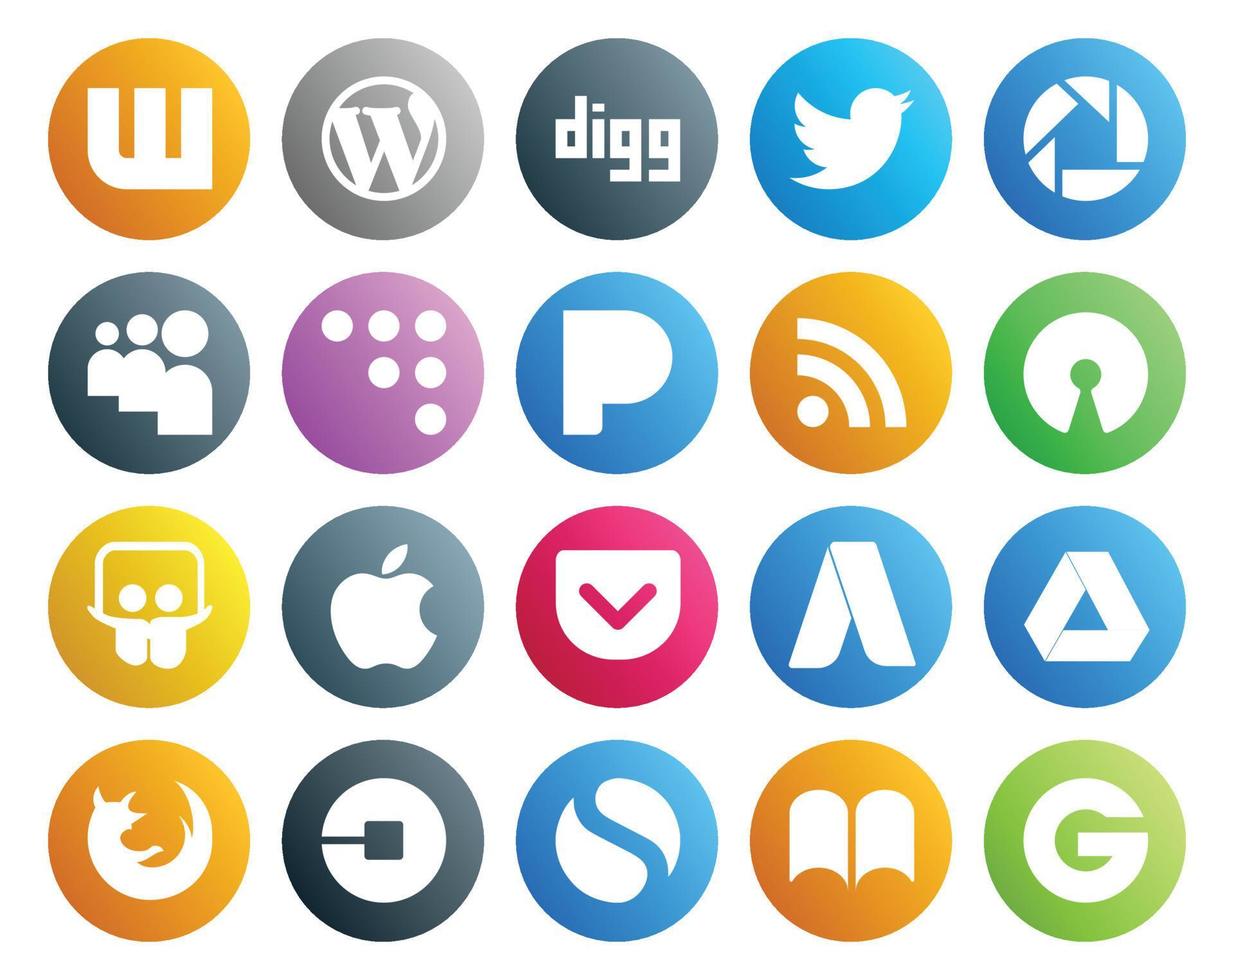 Paquete de 20 íconos de redes sociales que incluye firefox adwords coderwall pocket slideshare vector